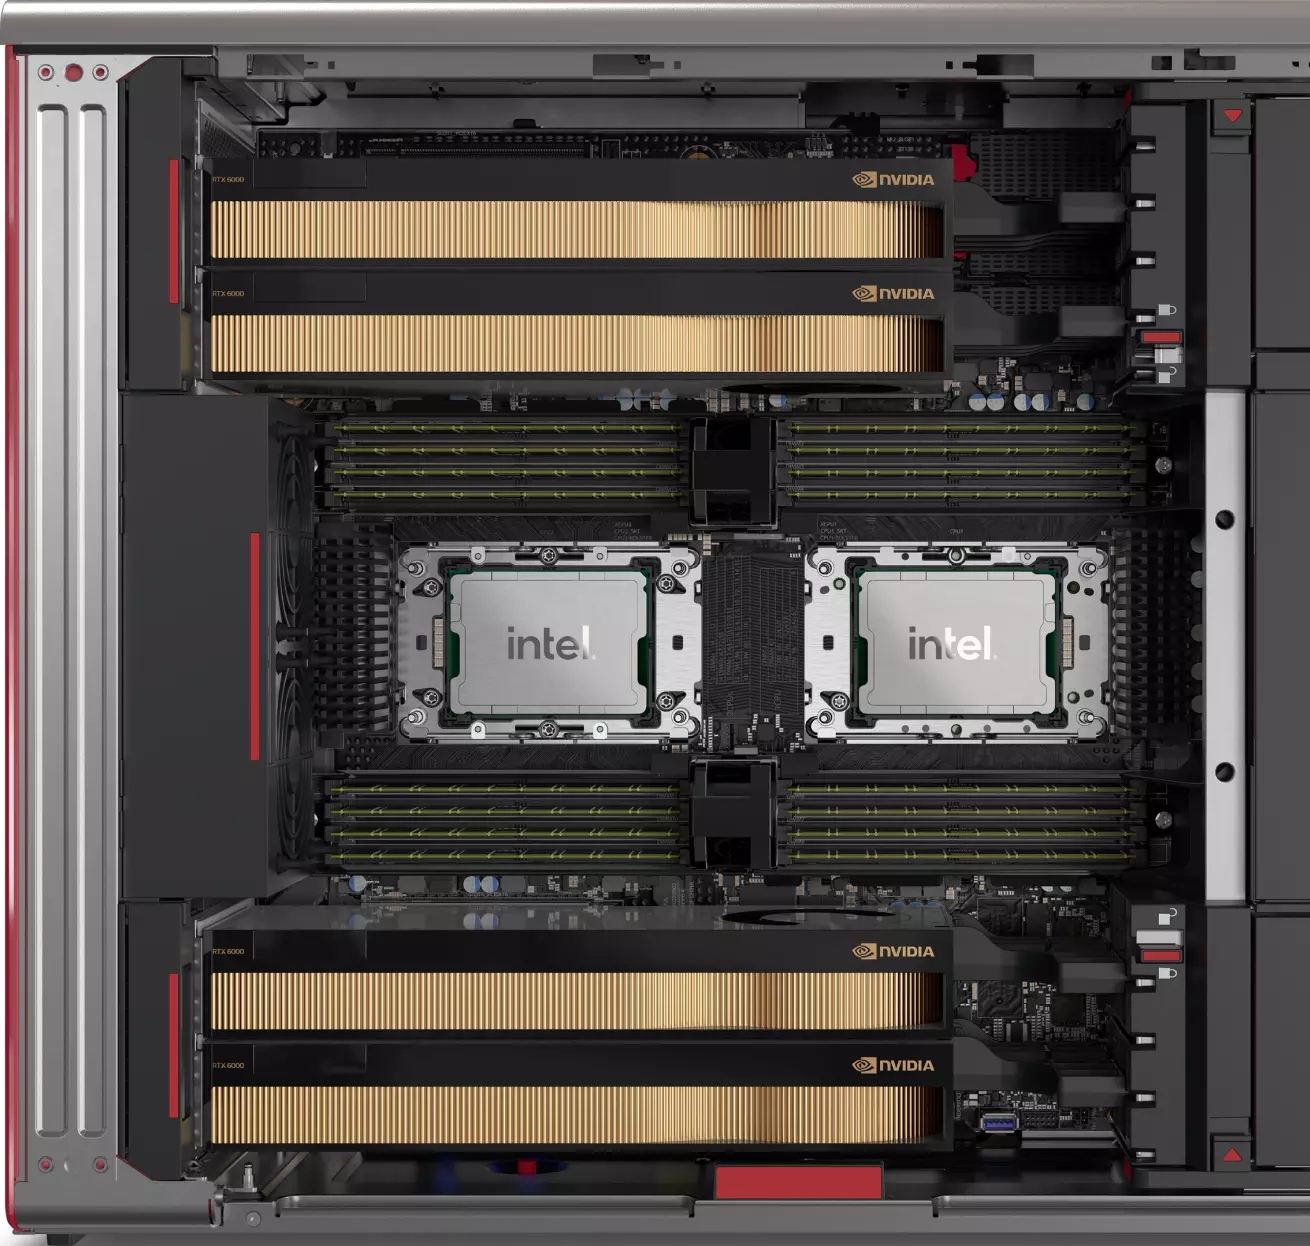 Dettaglio dell'interno di Lenovo Workstation PX, che mostra le due CPU, gli slot di memoria e lo spazio per quattro schede grafiche